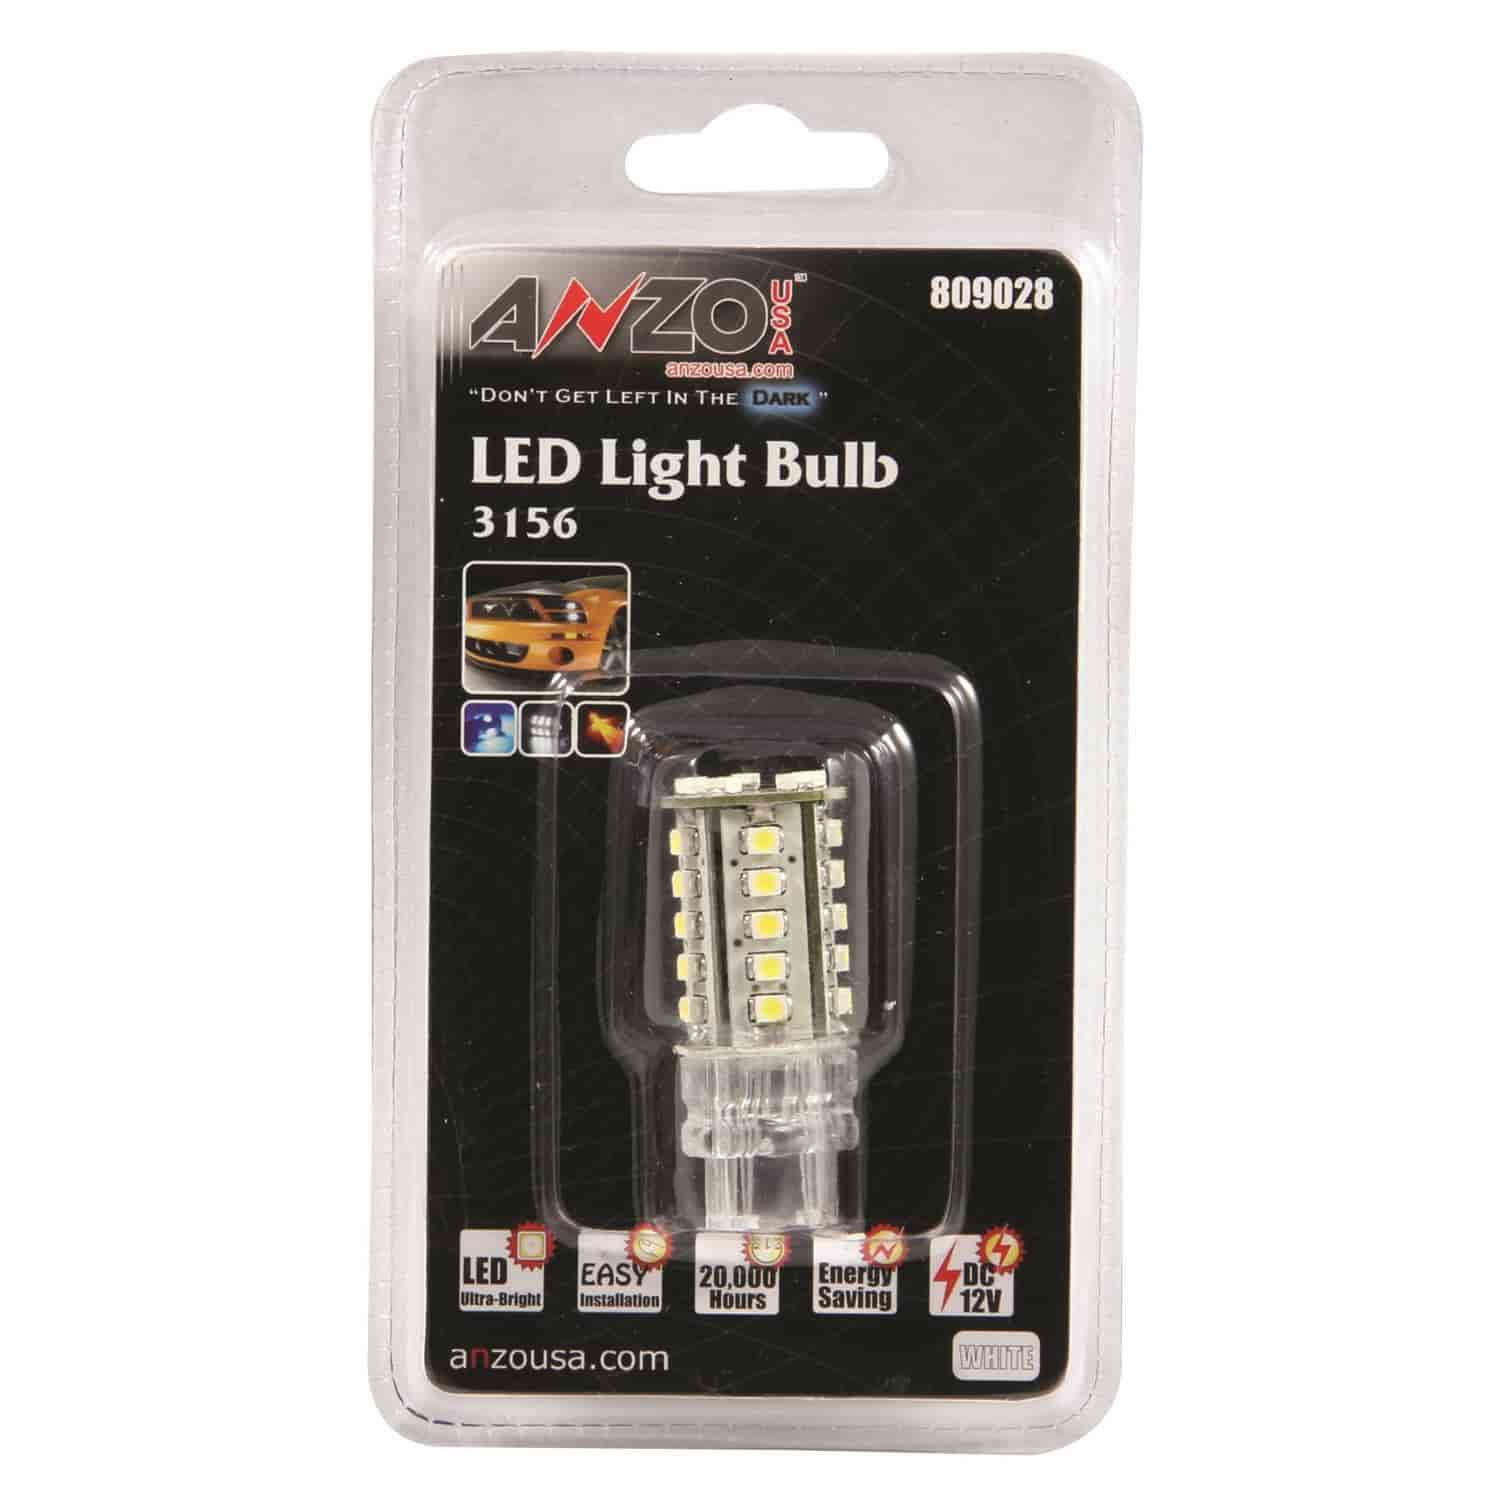 LED Universal Light Bulb 3156 White